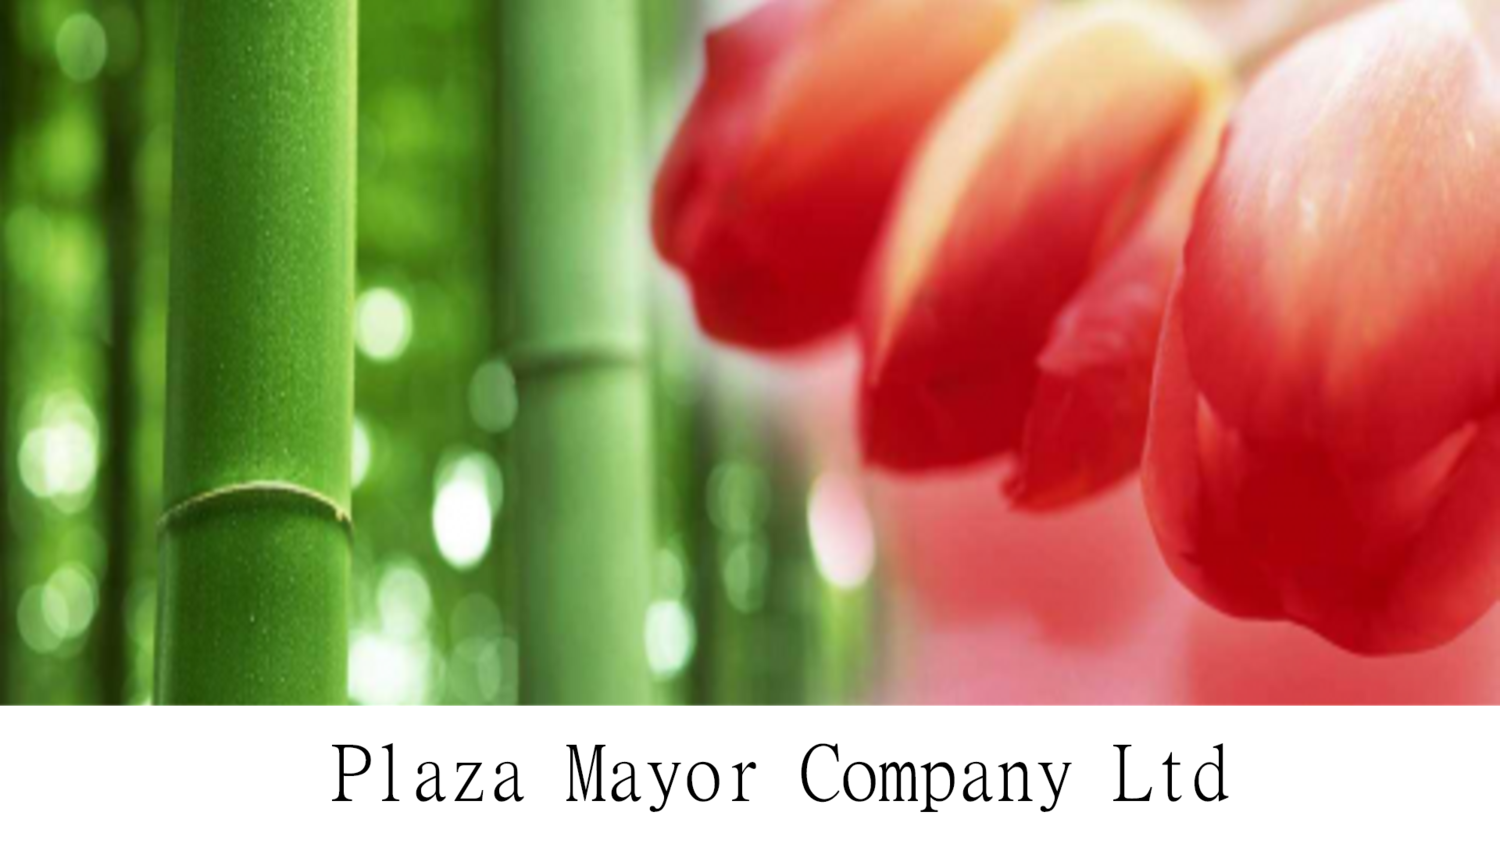 Plaza Mayor Company Ltd.